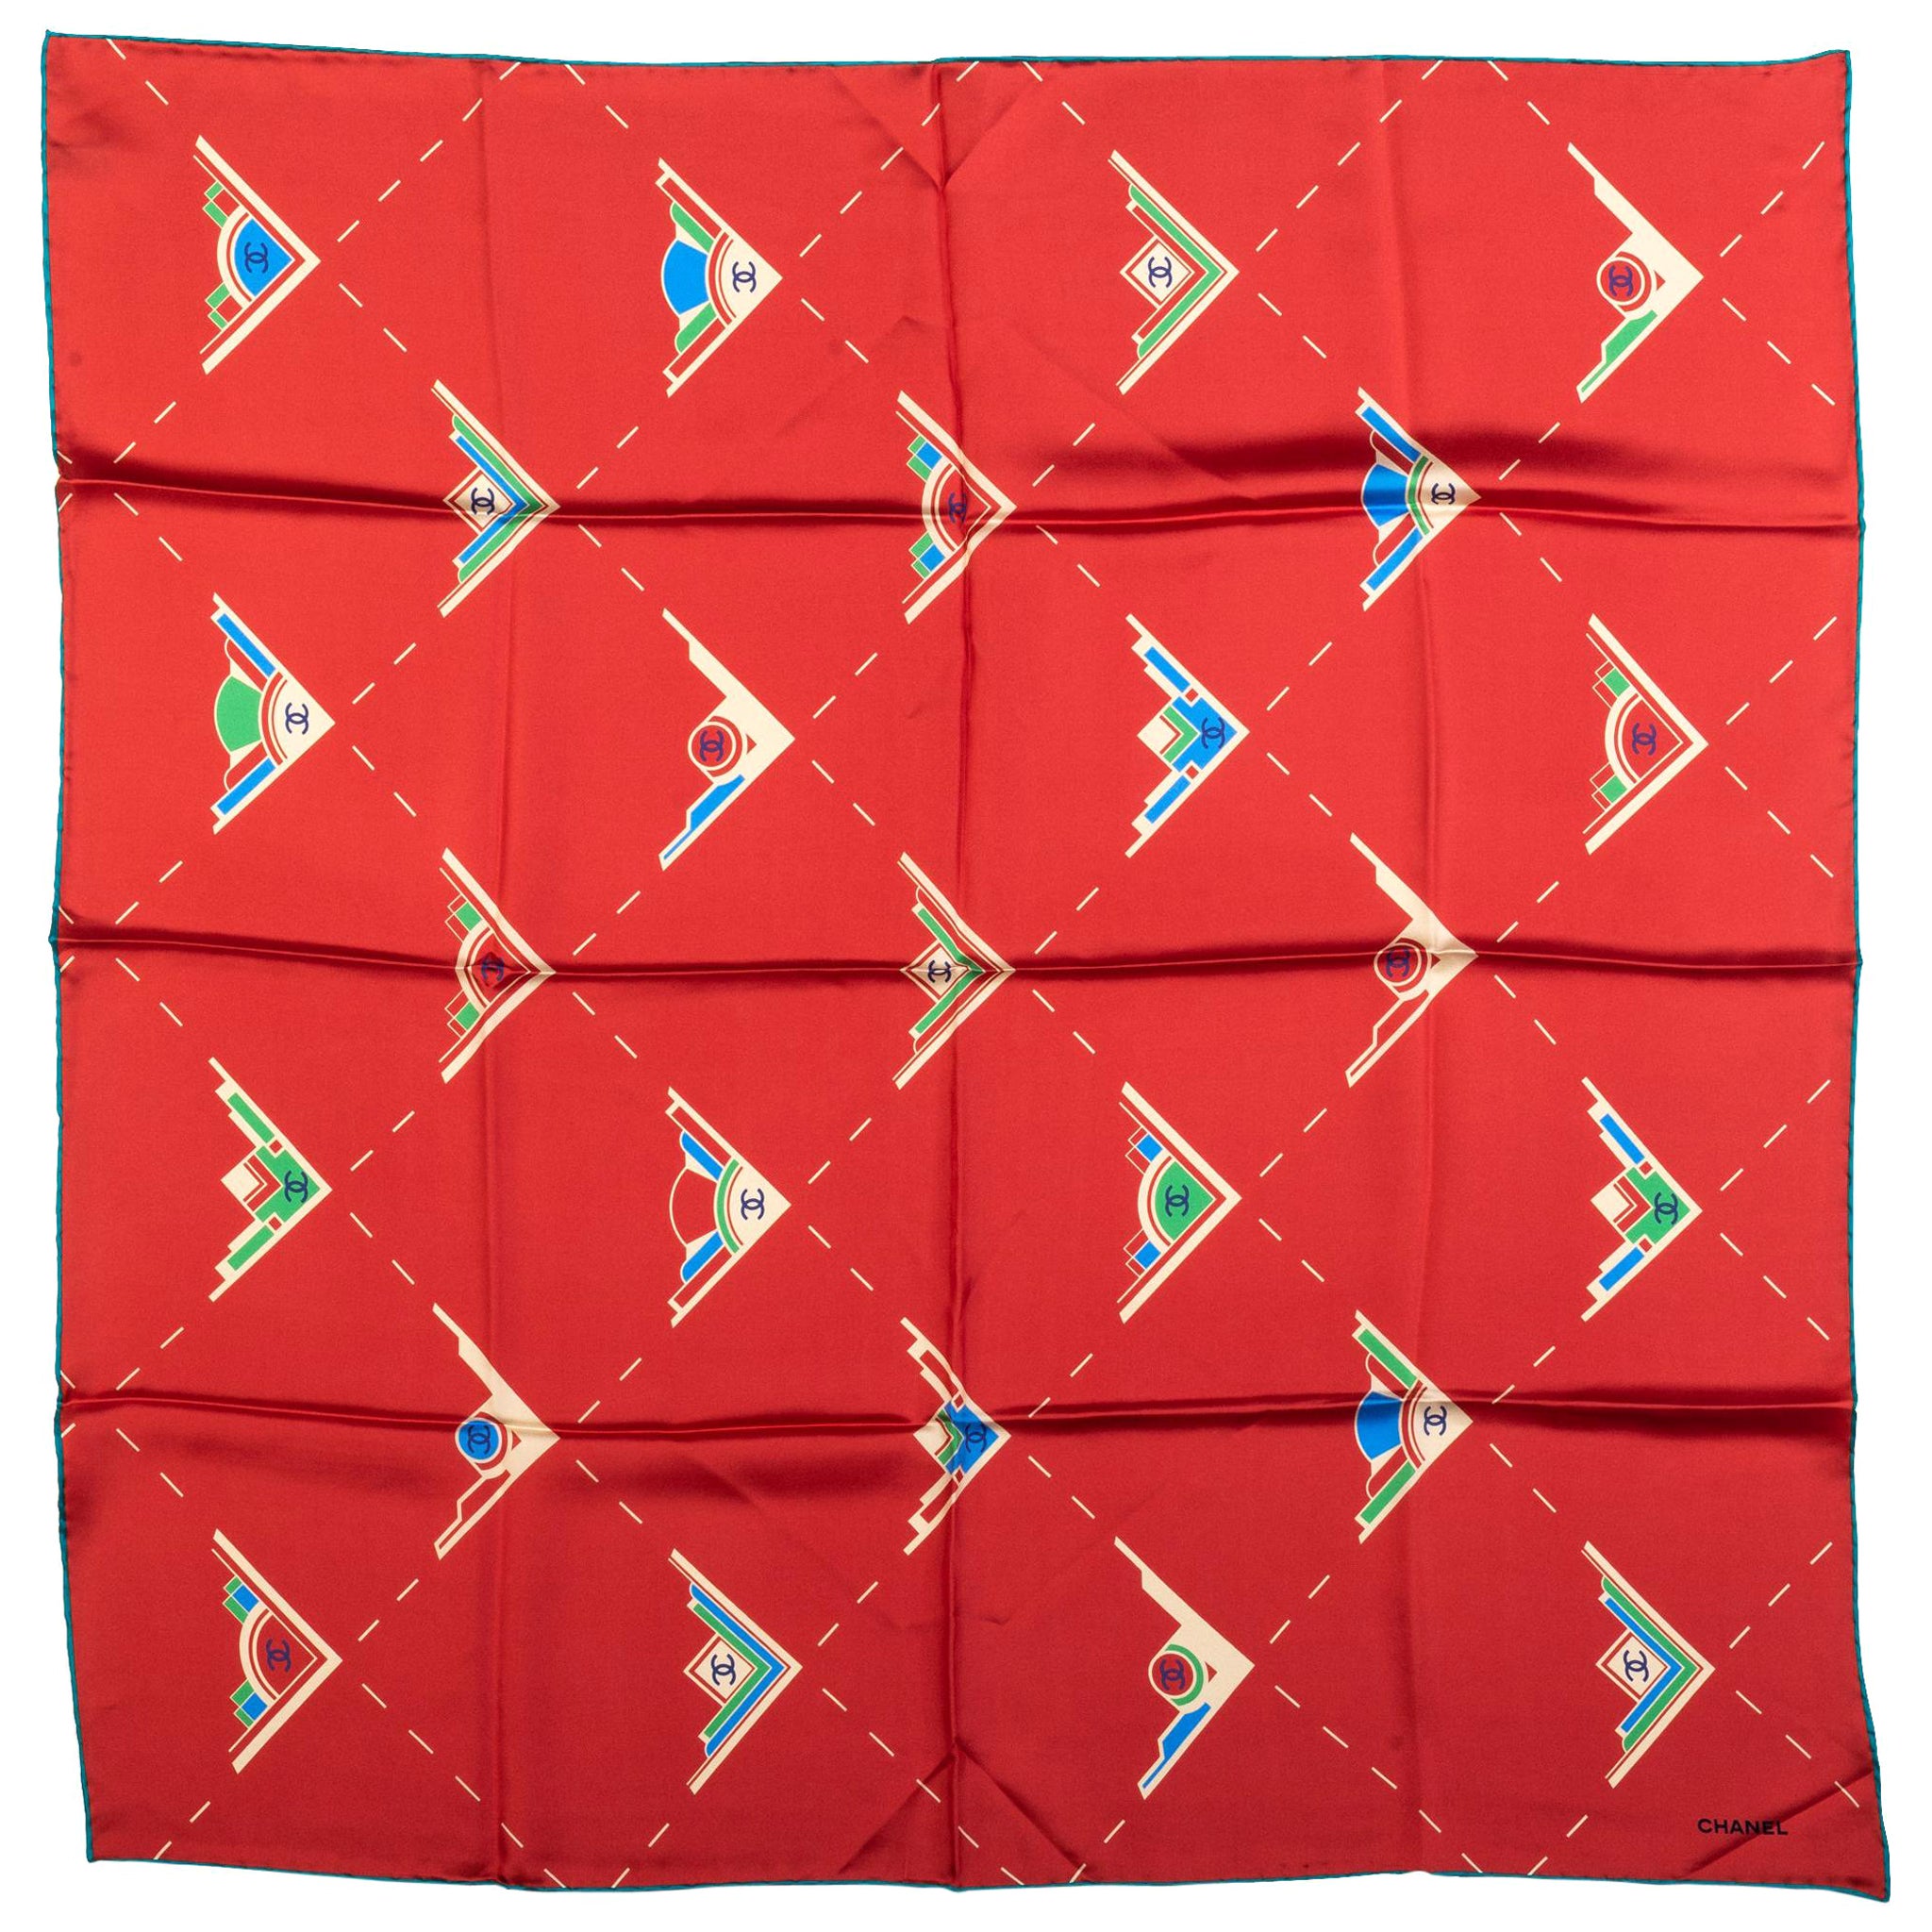 Chanel - Écharpe en soie rouge avec logo géométrique, état neuf